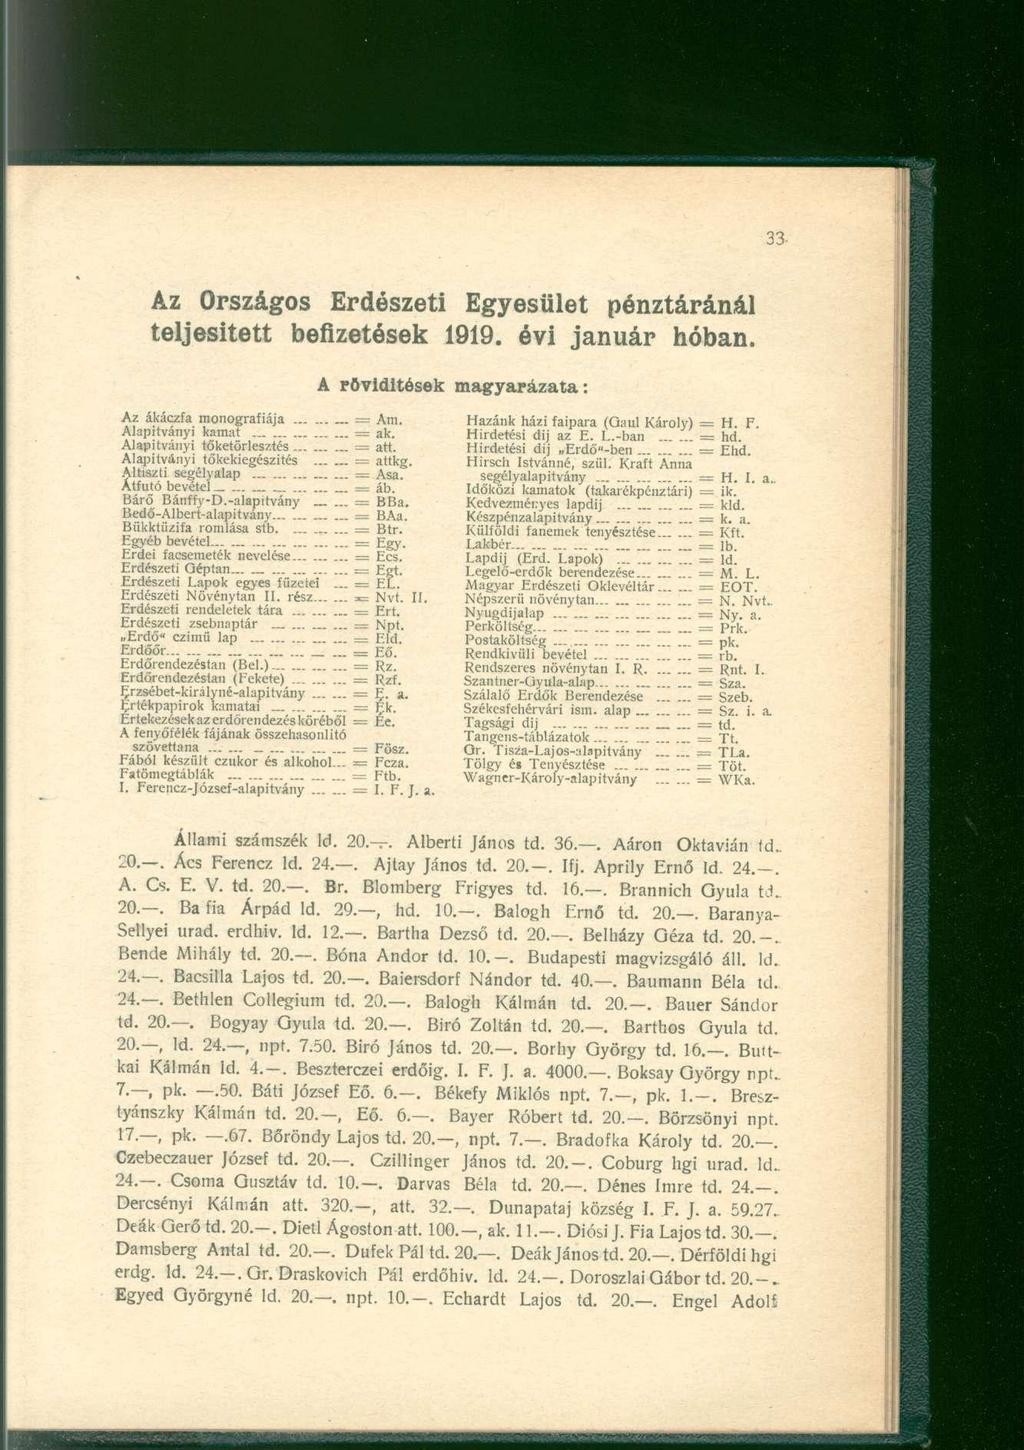 Az Országos Erdészeti Egyesület pénztáránál teljesített befizetések 1919. évi január hóban. A rövidítések magyarázata: Az ákáczfa monográfiája = Ara. Alapítványi kamat == ak.